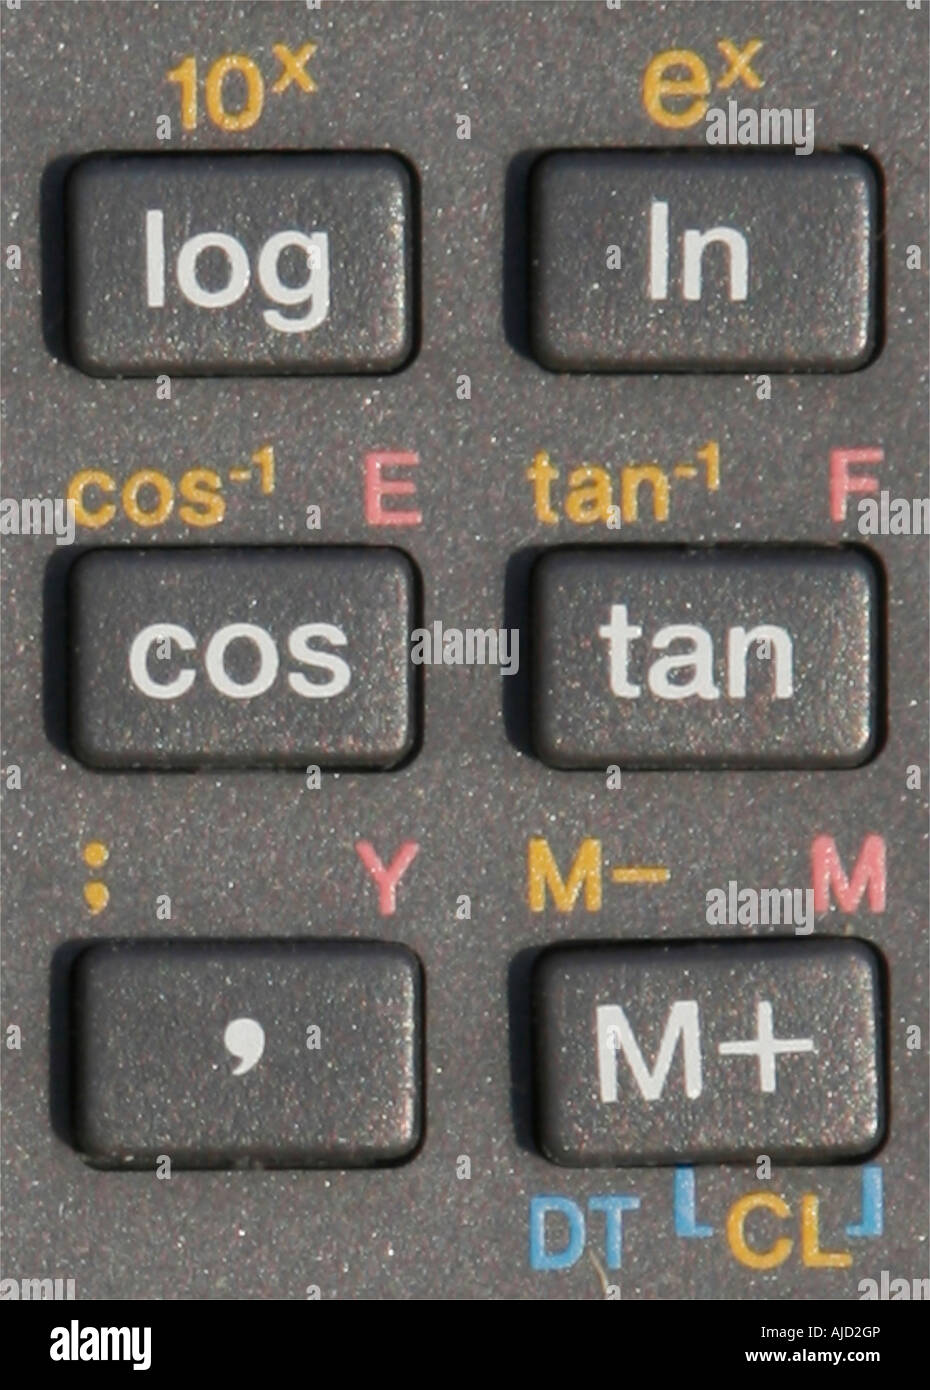 Graue Tasten auf einem Rechner mit Log in cos tan m + und mathematische  Symbole Stockfotografie - Alamy